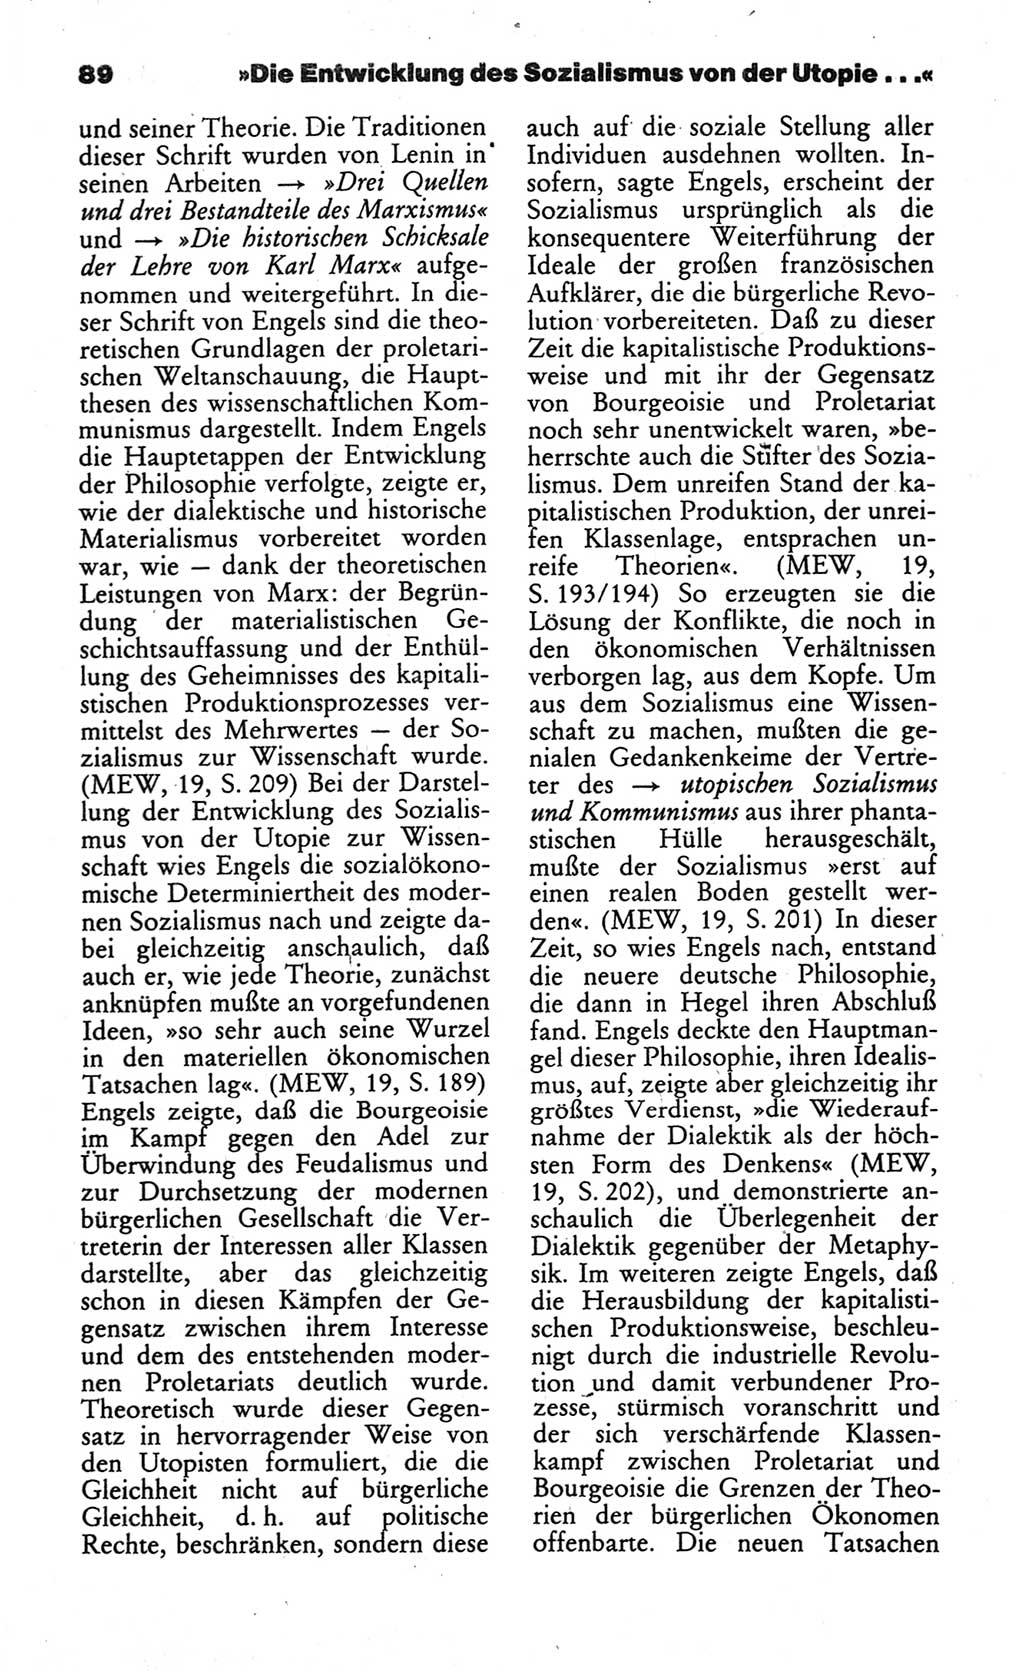 Wörterbuch des wissenschaftlichen Kommunismus [Deutsche Demokratische Republik (DDR)] 1984, Seite 89 (Wb. wiss. Komm. DDR 1984, S. 89)